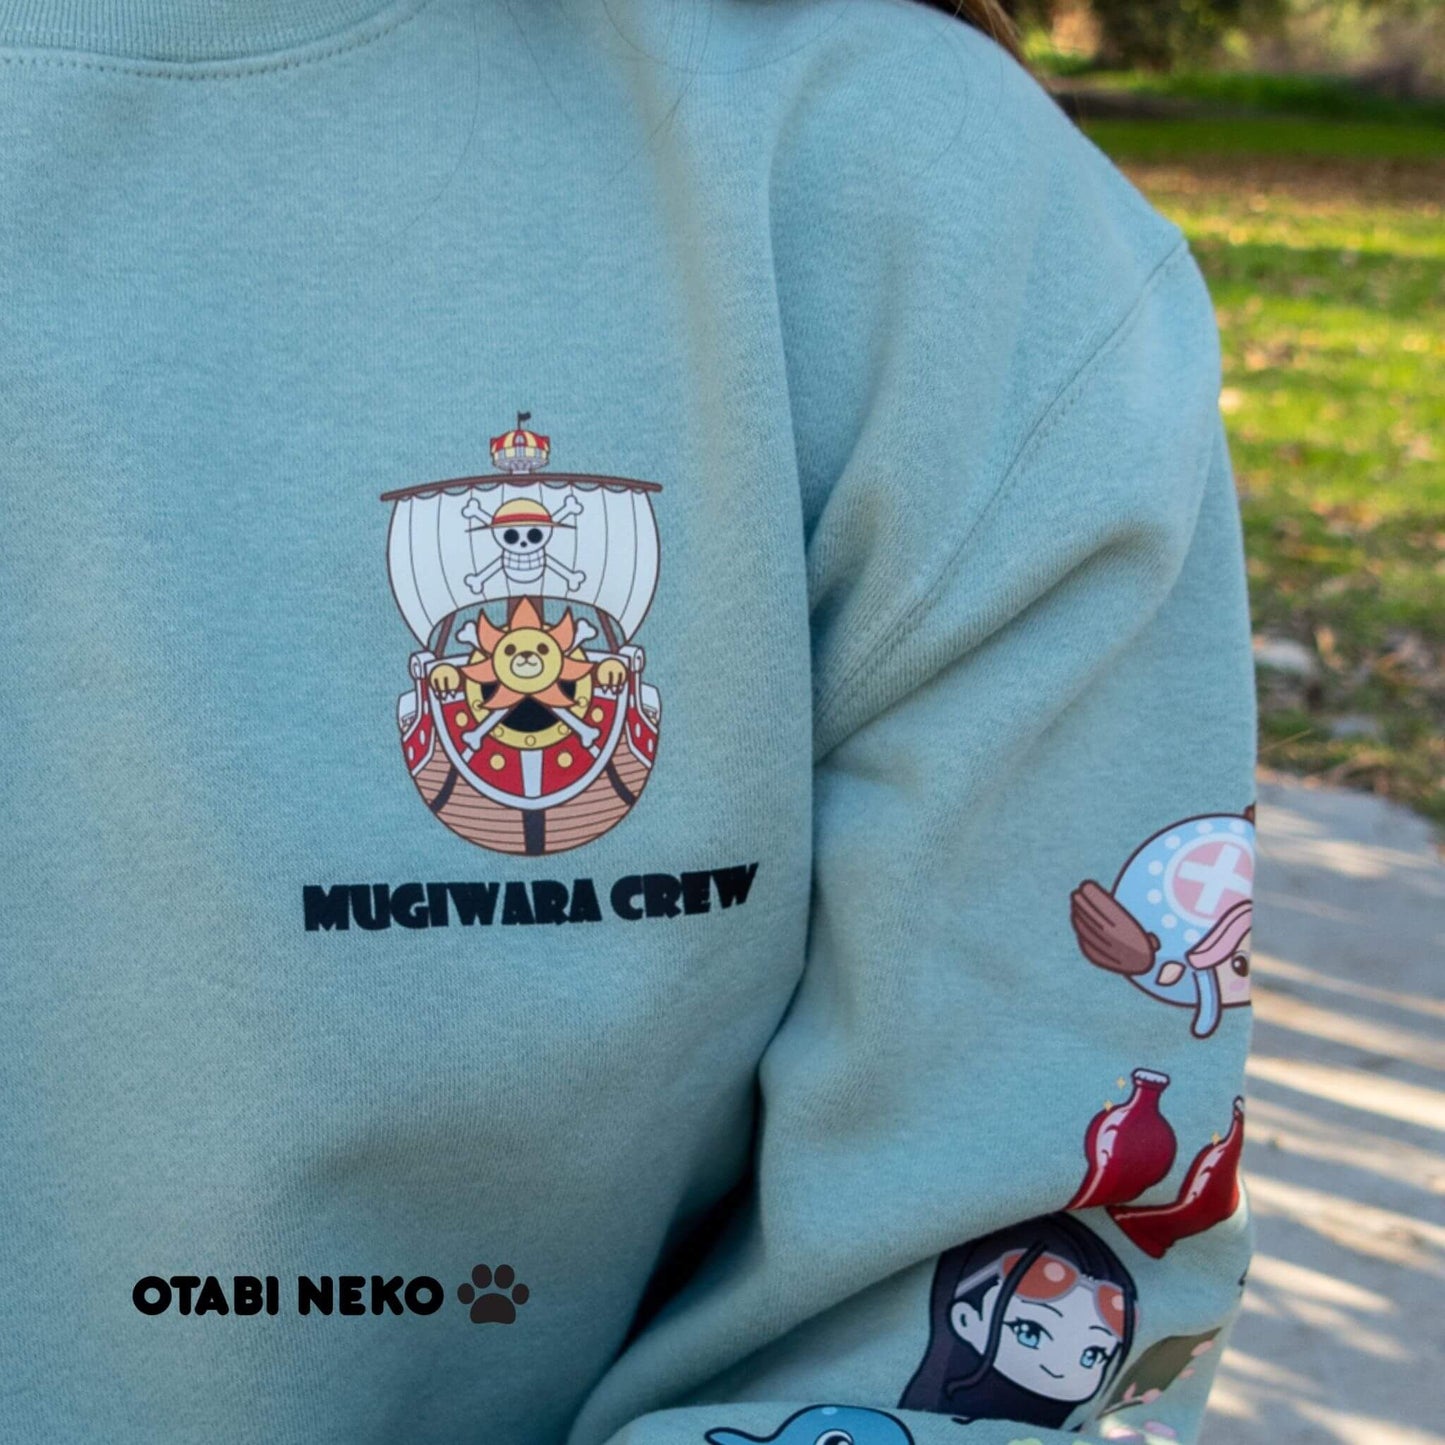 Mugiwara Crew Sweater